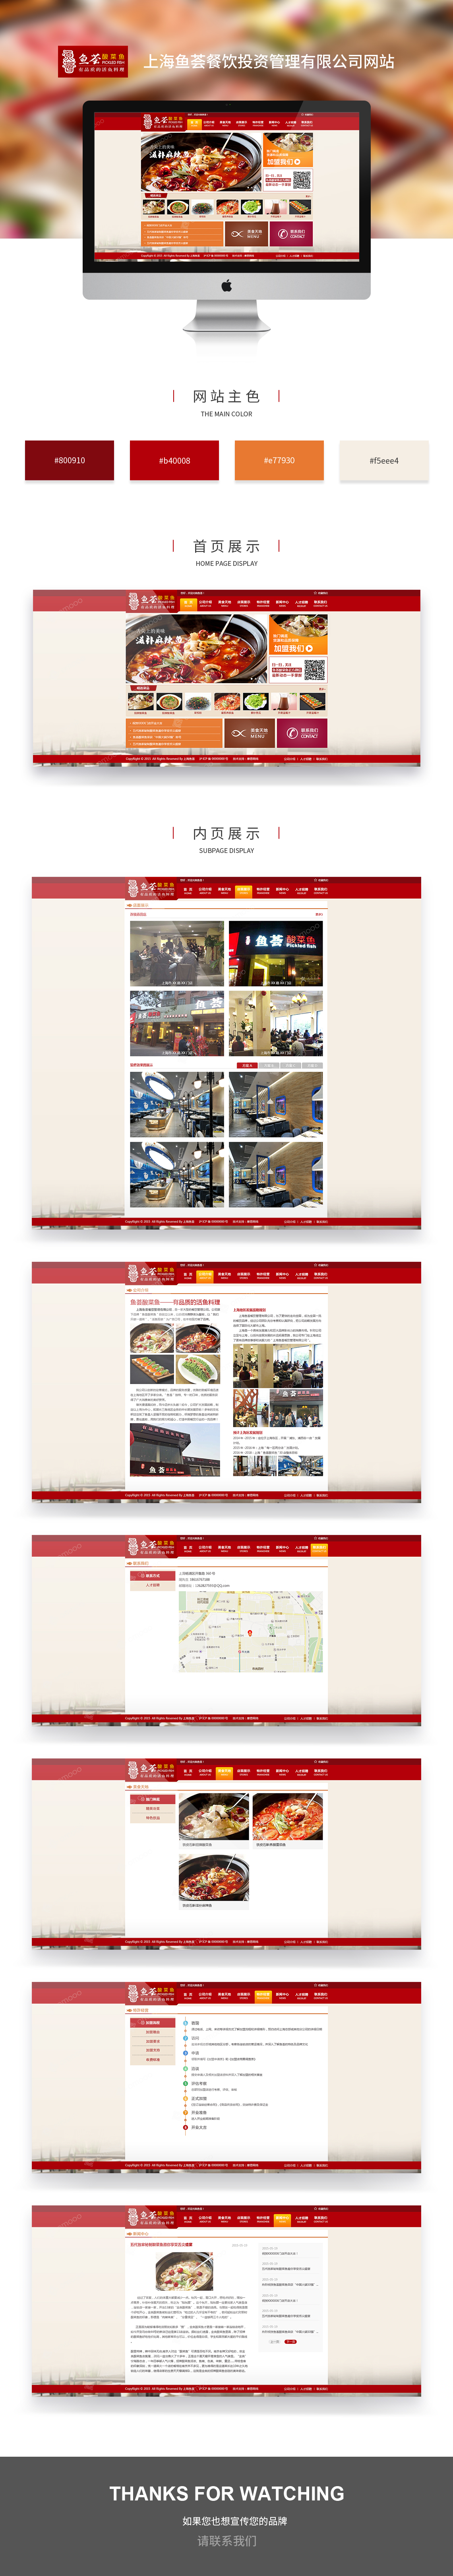 公司網站建設案例之魚薈餐飲投資管理公司